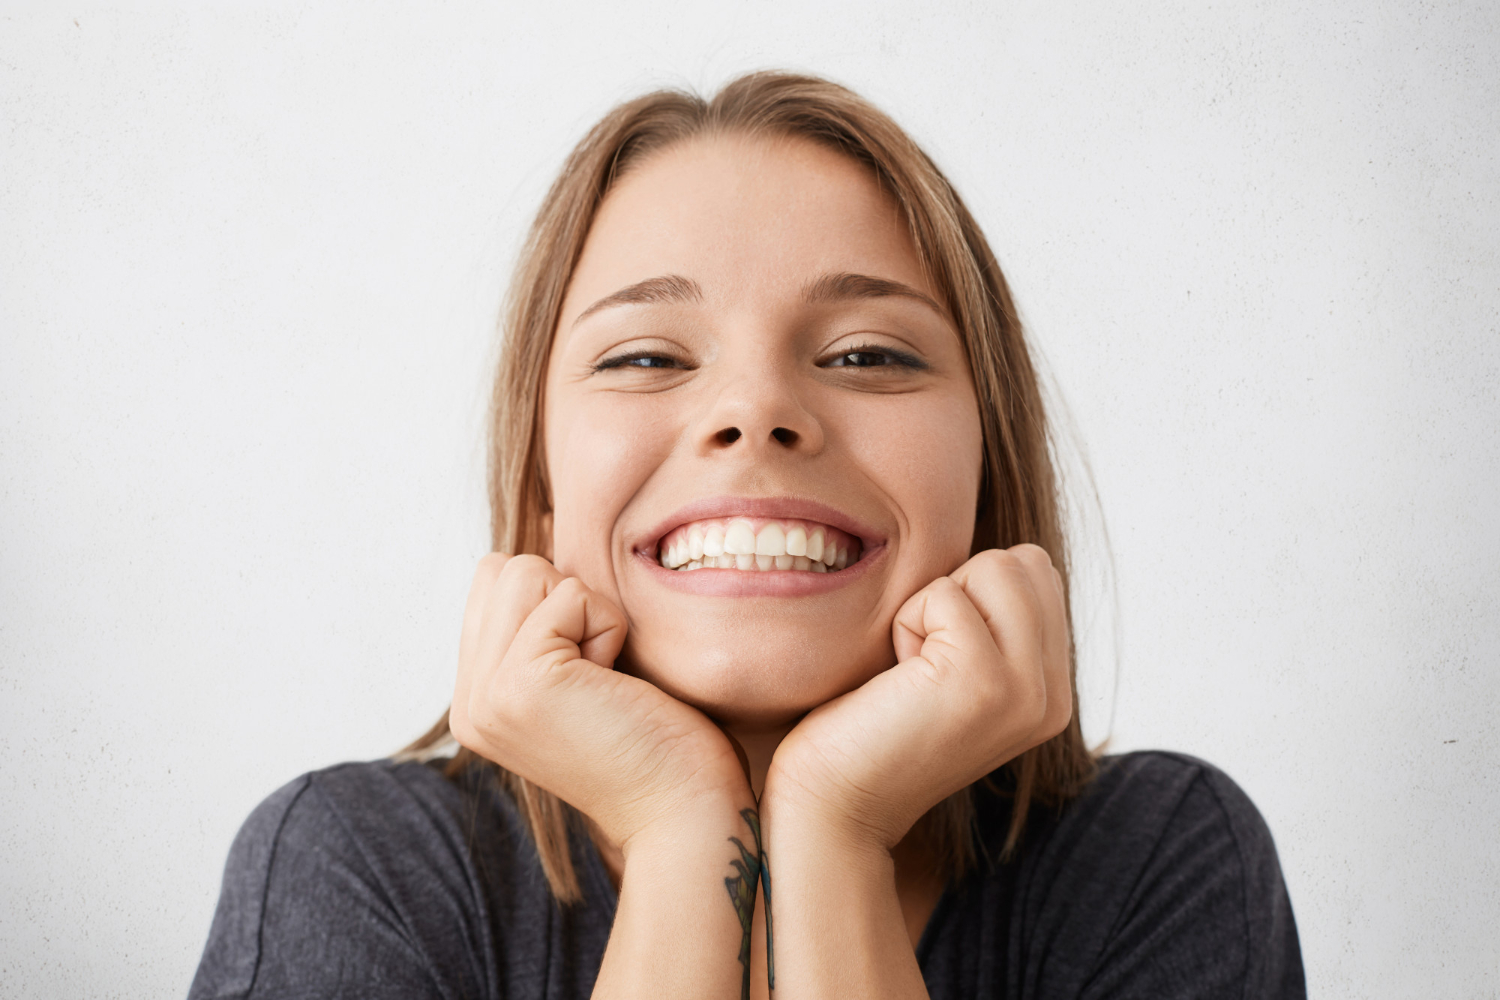 Amedent - Clínica Dental en Valencia|Blanqueamiento Dental: La sonrisa que siempre soñaste